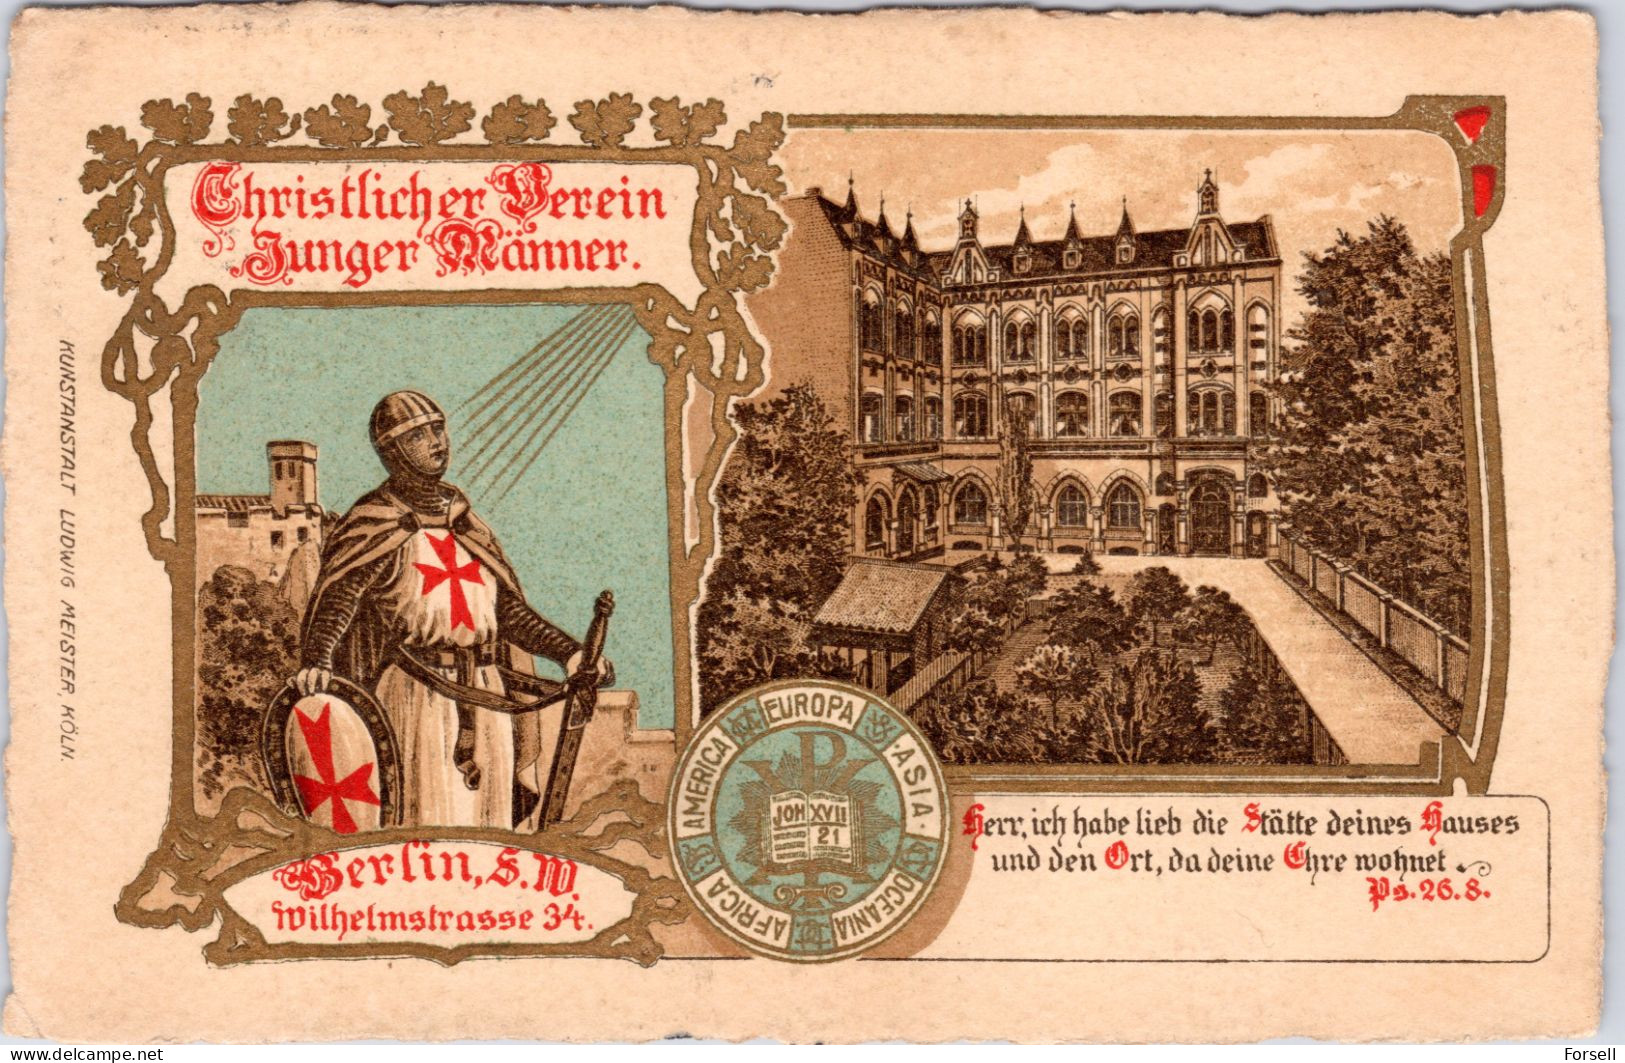 Christlicher Verein Junger Männer , Berlin SW , Wilhelmstrasse 34 (Stempel: Berlin SW 1912) - Kreuzberg